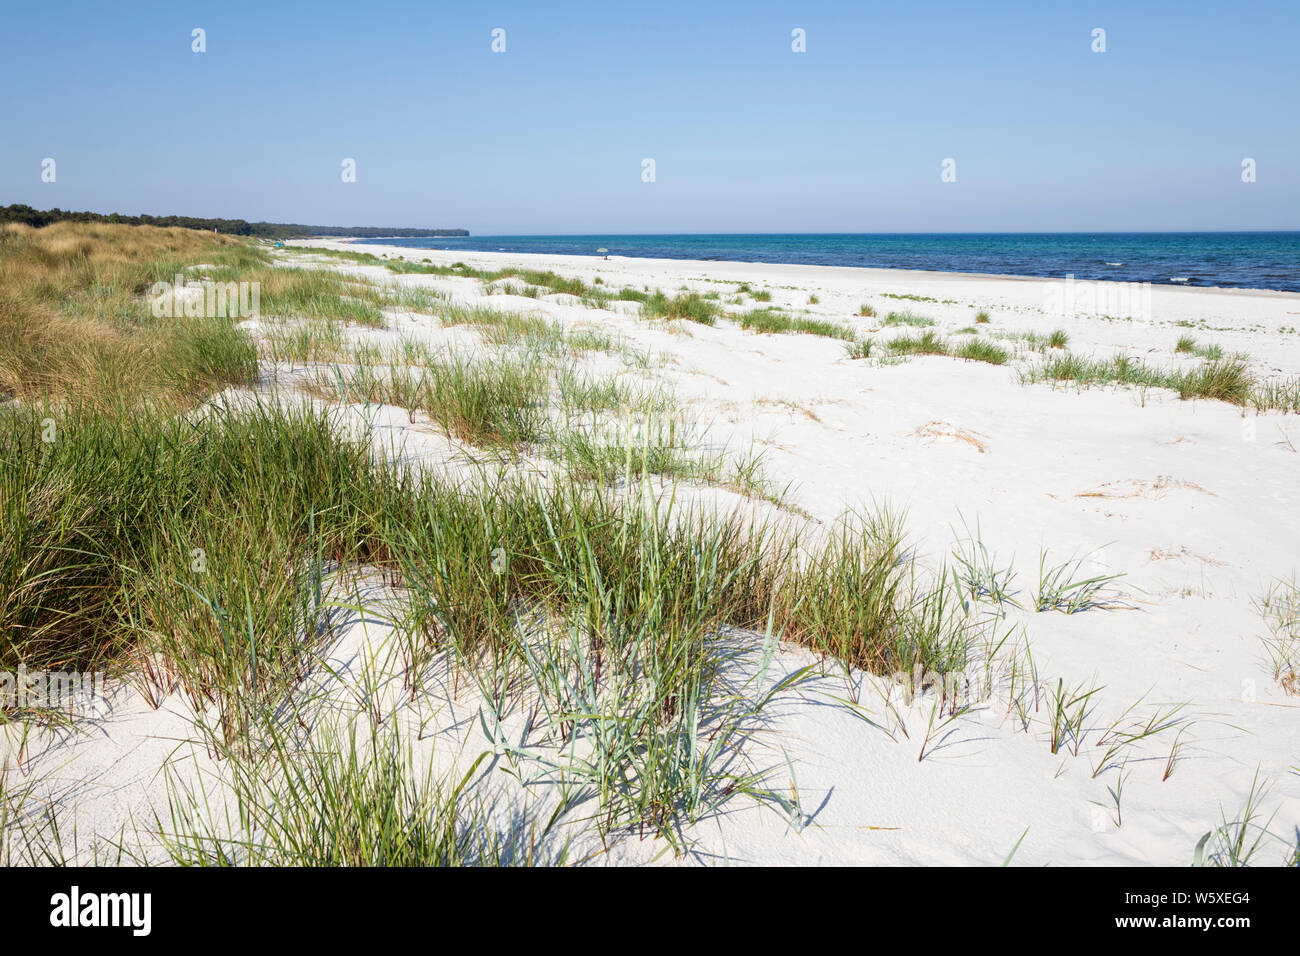 Spiaggia di sabbia bianca di Dueodde sull isola della costa sud, Dueodde, isola di Bornholm, Mar Baltico, Danimarca, Europa Foto Stock